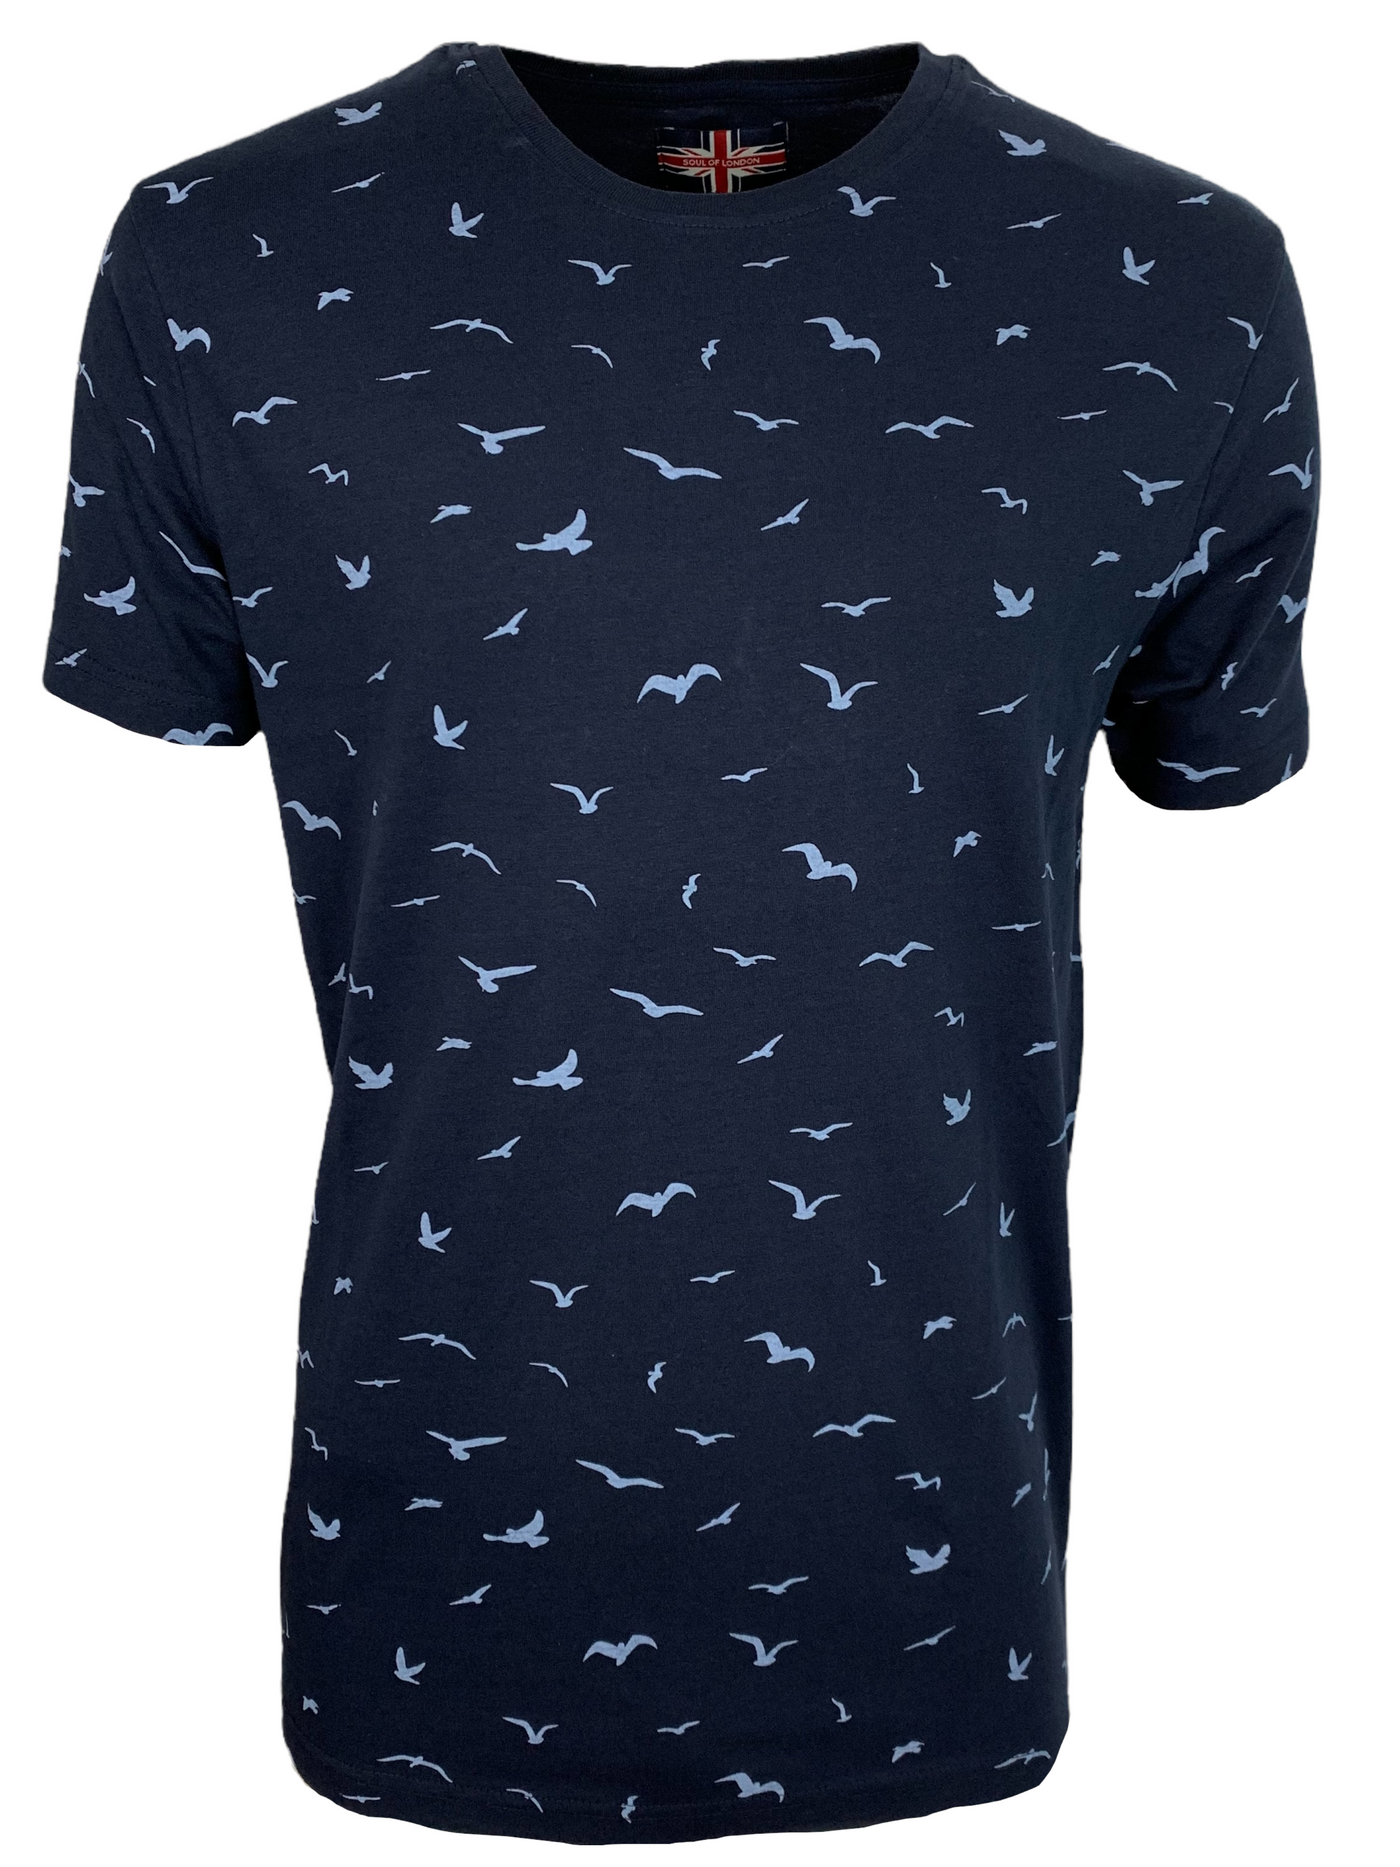 T-shirt marine à motif d'oiseaux